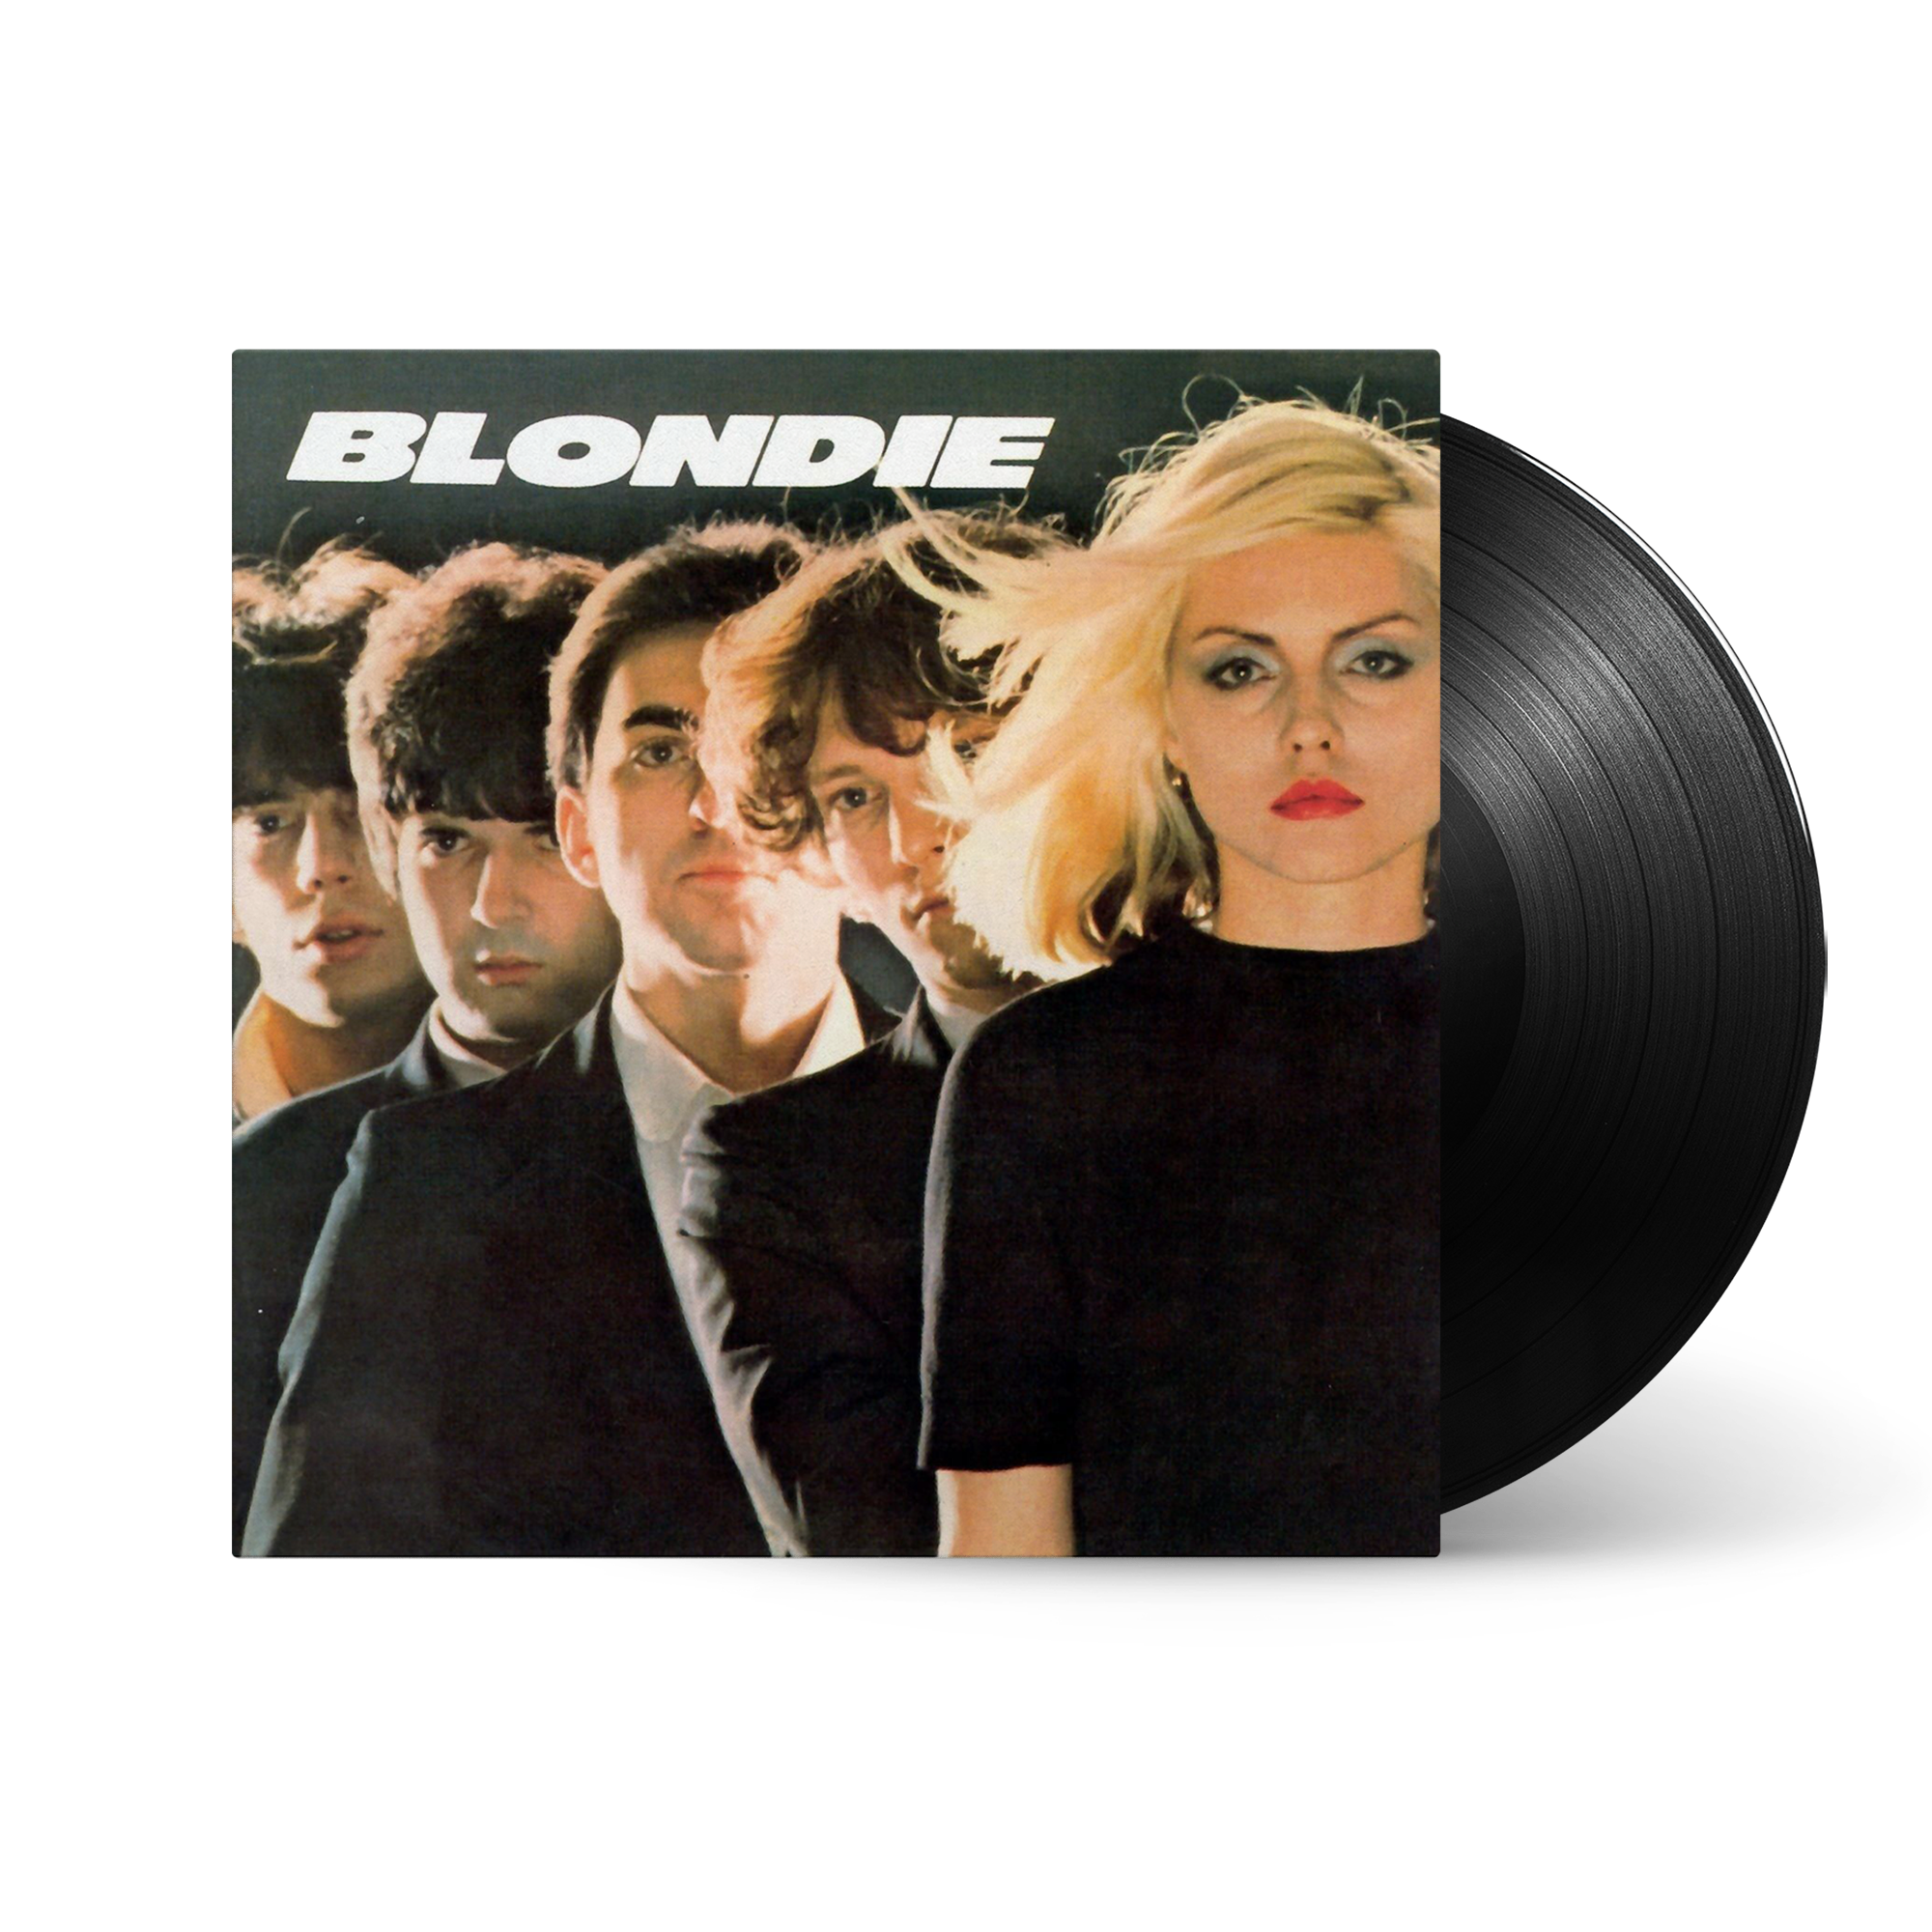 Blondie - Blondie: Vinyl LP